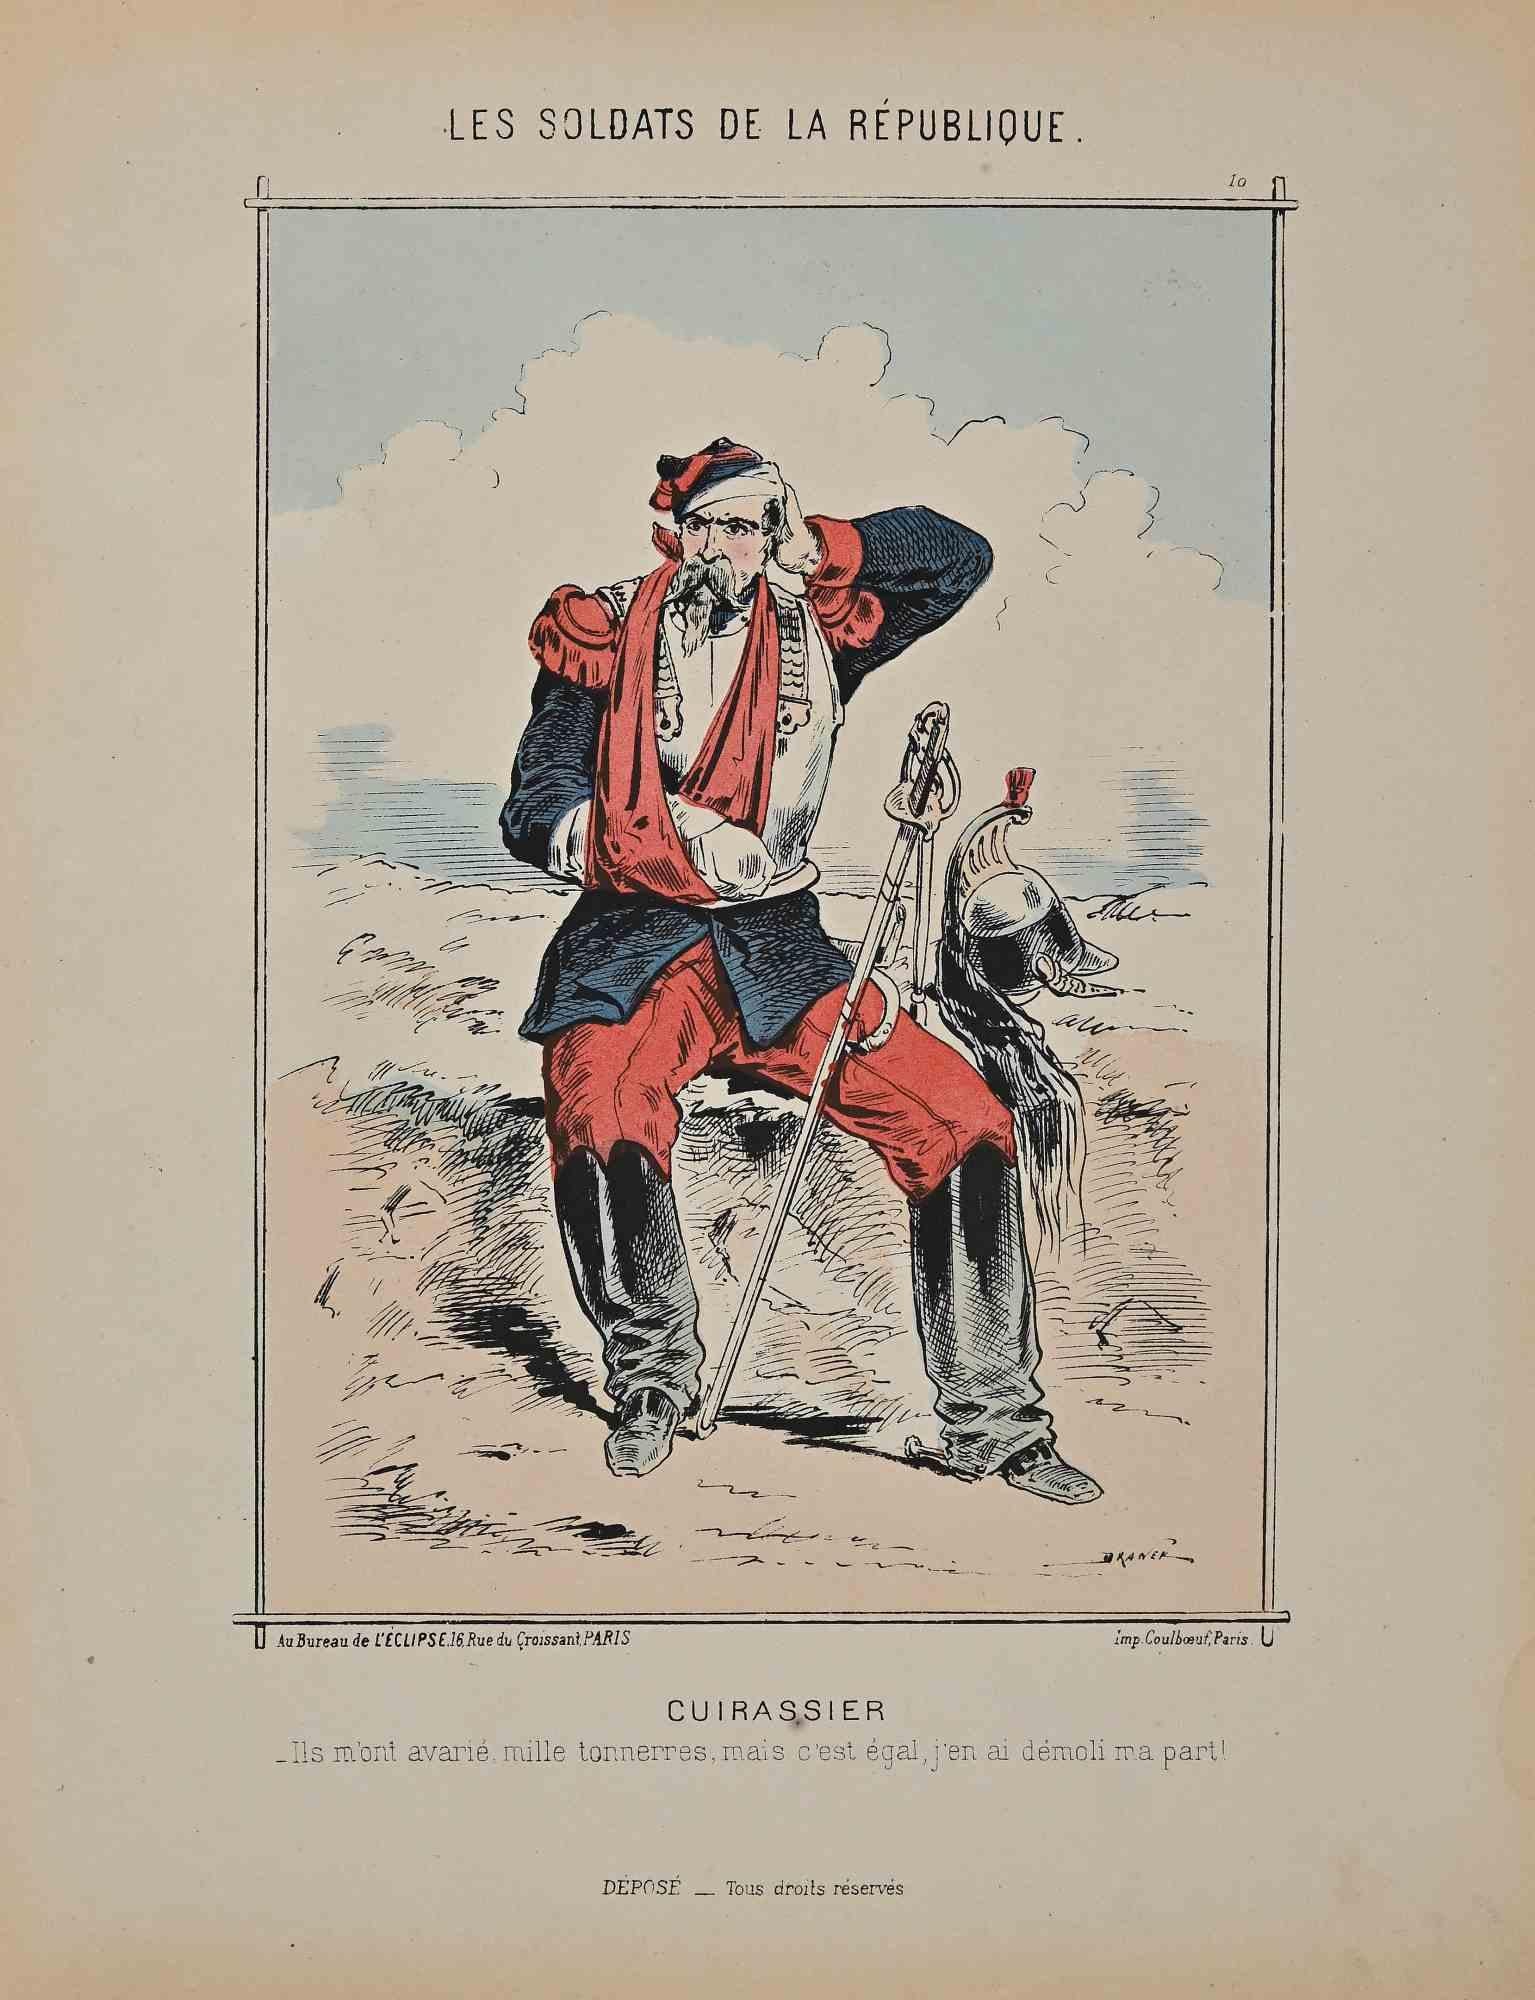 Cuirassier ist eine Original-Lithographie von Jules Renard aus dem 19. Jahrhundert.

Es ist Teil der Sammlung "Soldaten der Republik".

Handsigniert.

Guter Zustand.

Draner, eigentlich Jules Joseph Georges Renard (12. November 1833 in Lüttich -